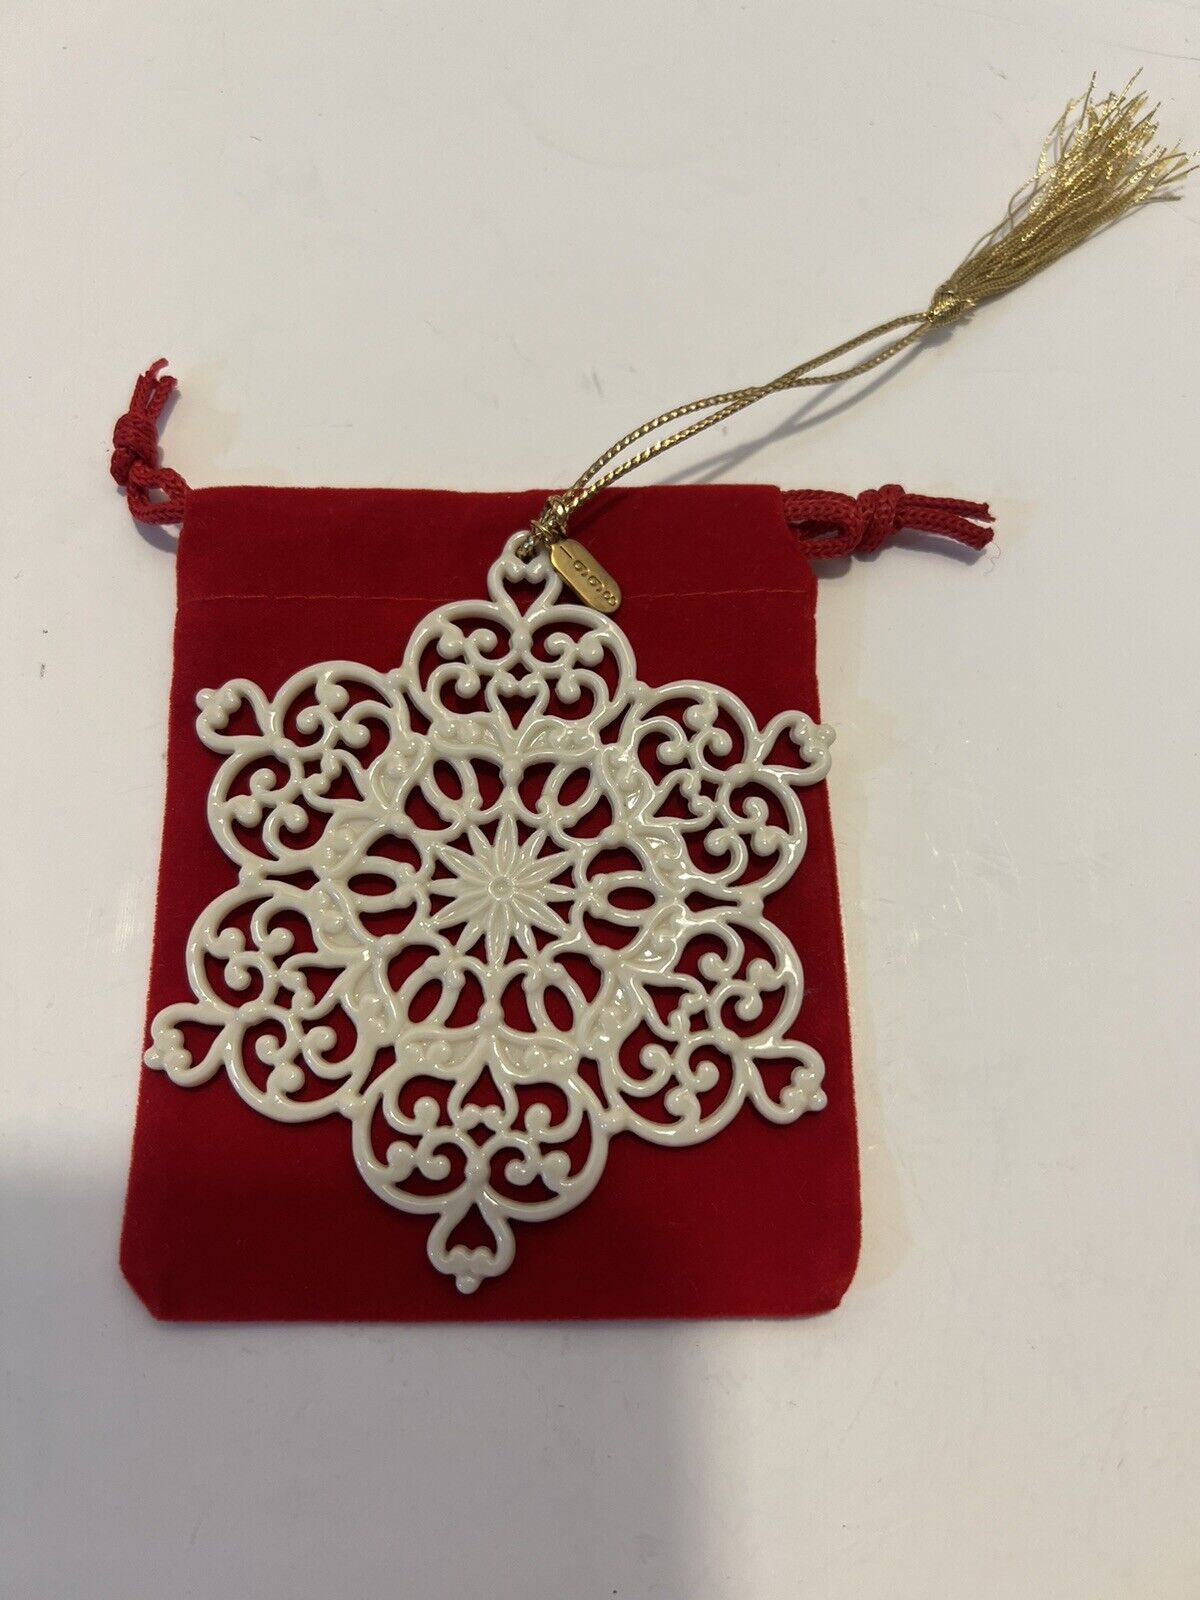 Lenox 1998 Pierced Snowflake Christmas Ornament - NO BOX